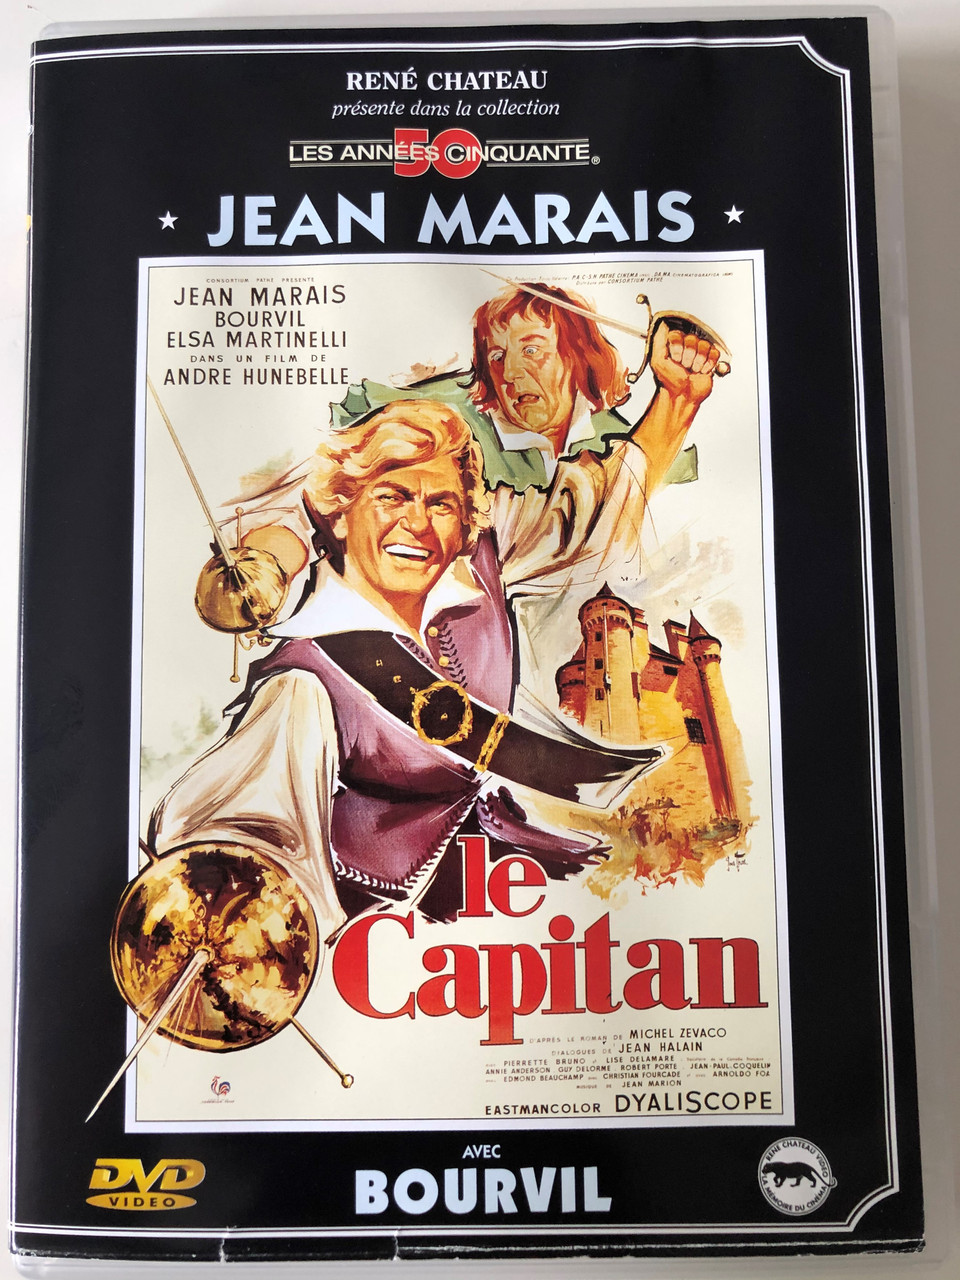 Le capitan DVD 1960 Captain Blood / Directed by André Hunebelle / Starring:  Jean Marais, Bourvil, Elsa Martinelli, Lise Delamare - bibleinmylanguage